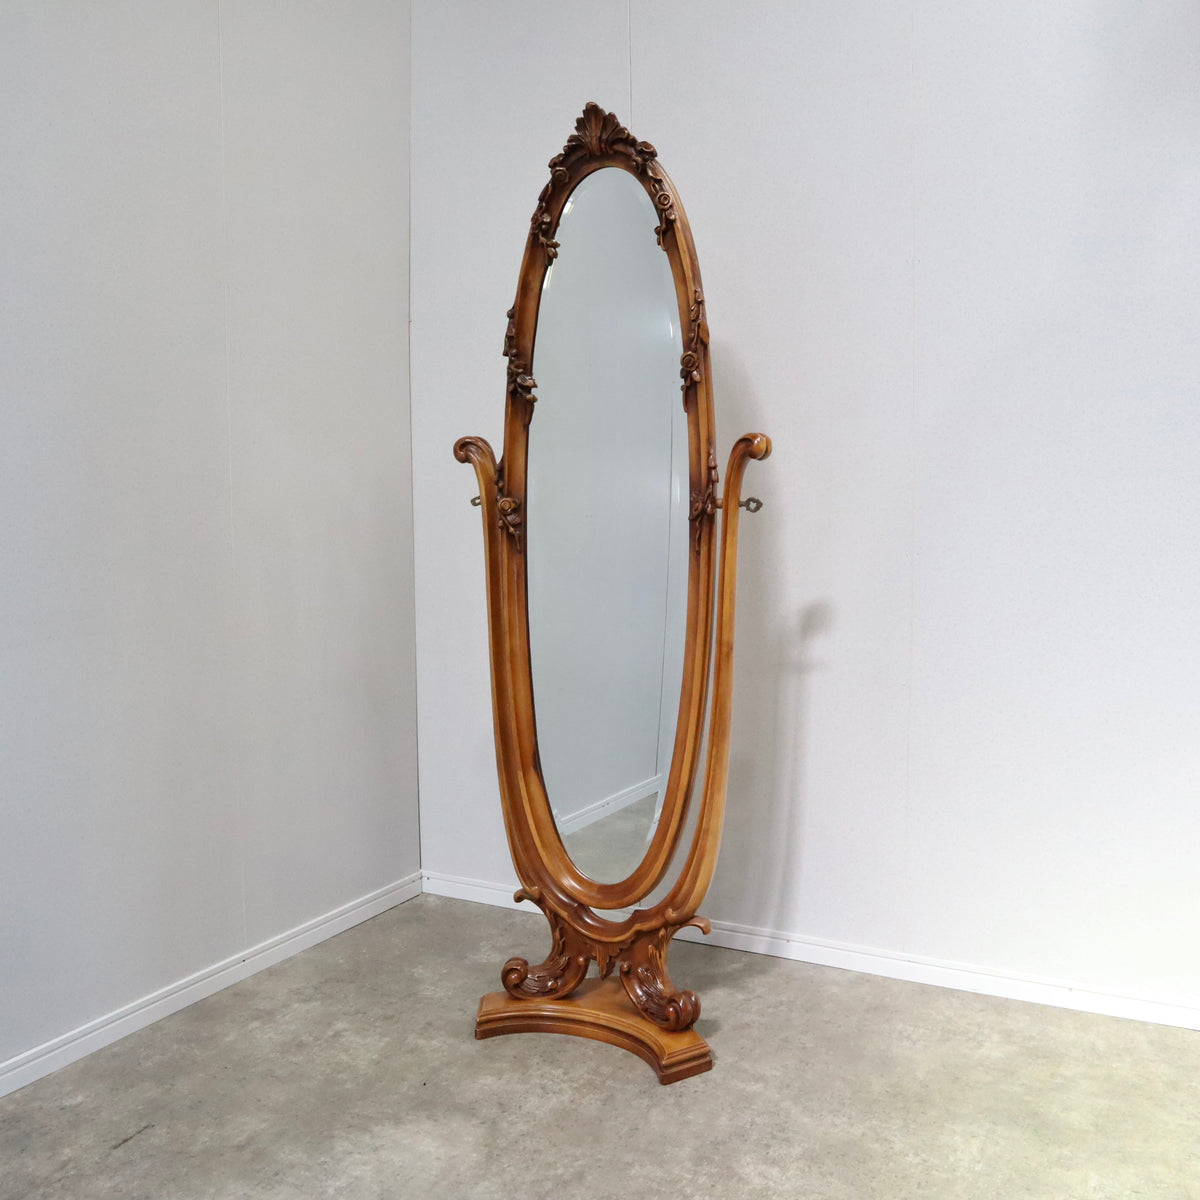 スタンドミラー アンティーク調 姿見 彫刻 木製 全身鏡【03A2202057】 – BANULの通販ならBANUL